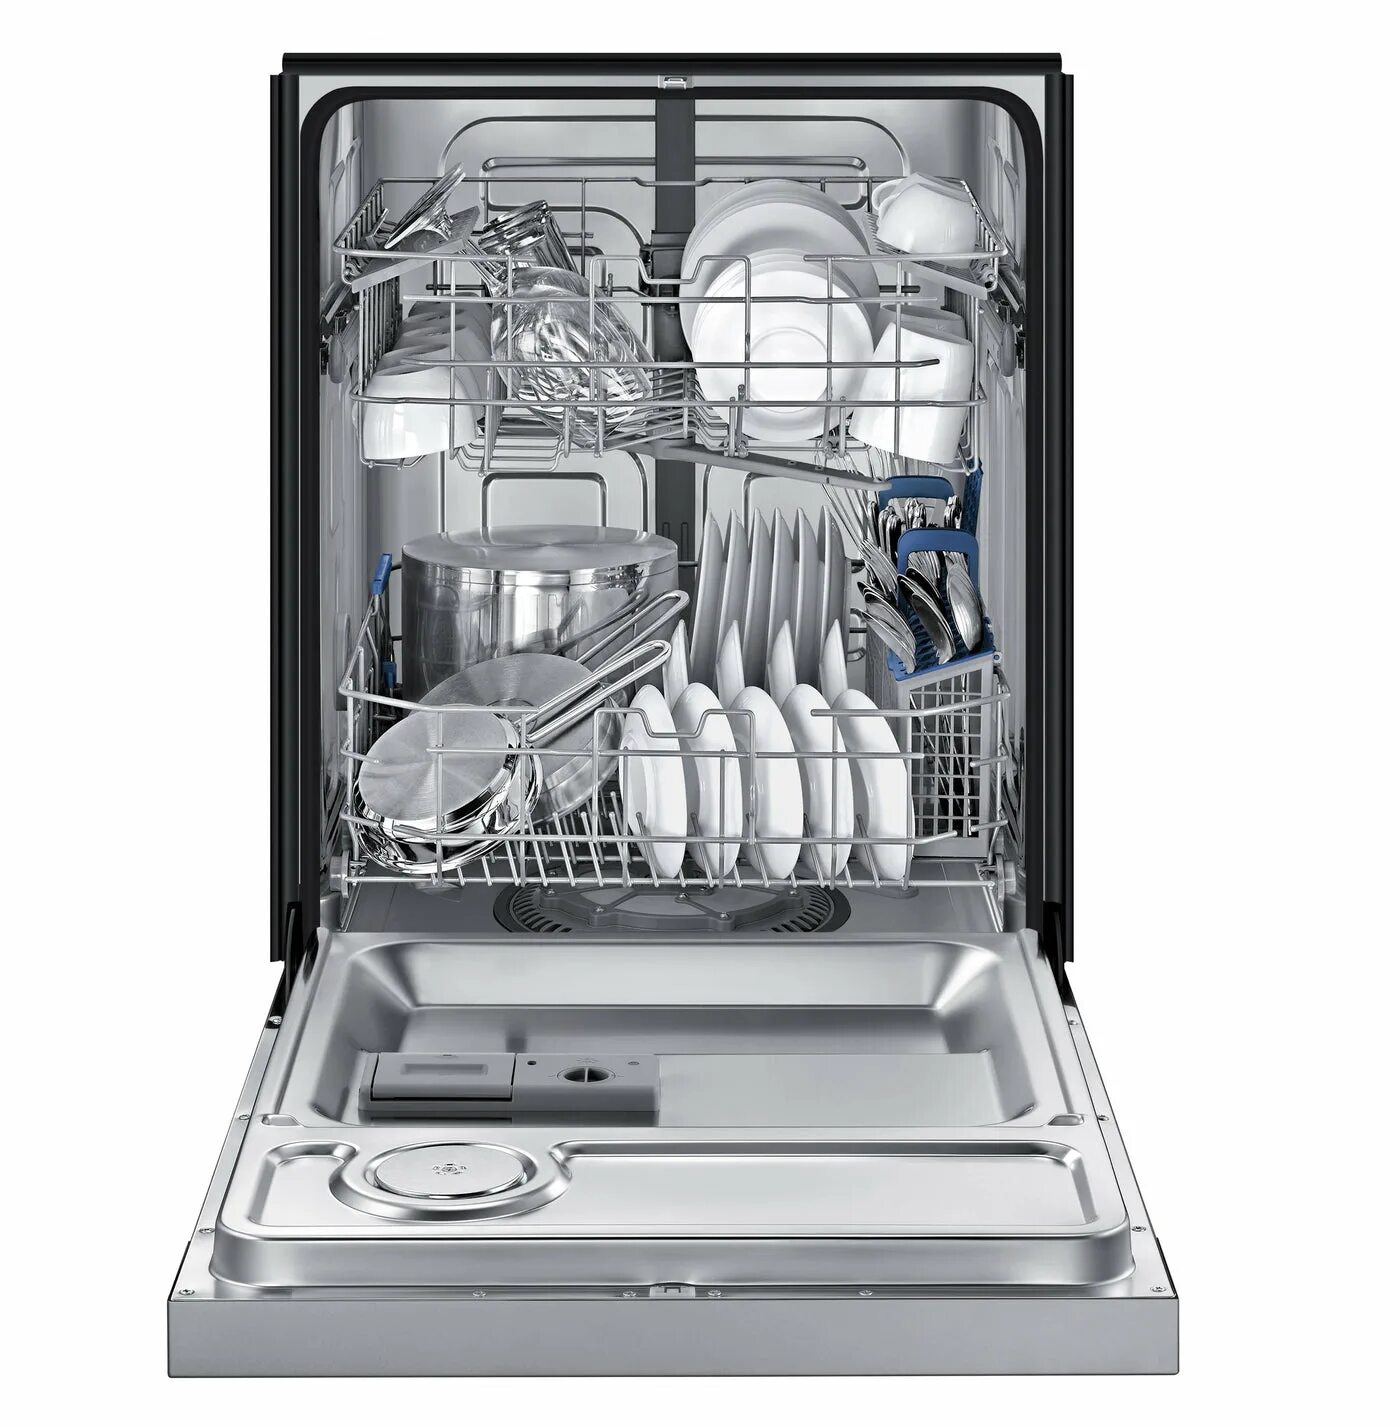 Посудомоечная машина Samsung dw50r4040bb. Посудомоечная машина Samsung dw50r4050fs. Посудомоечная машина Platinum dw139e. Посудомоечная машина Avalon-dw32t инокс.